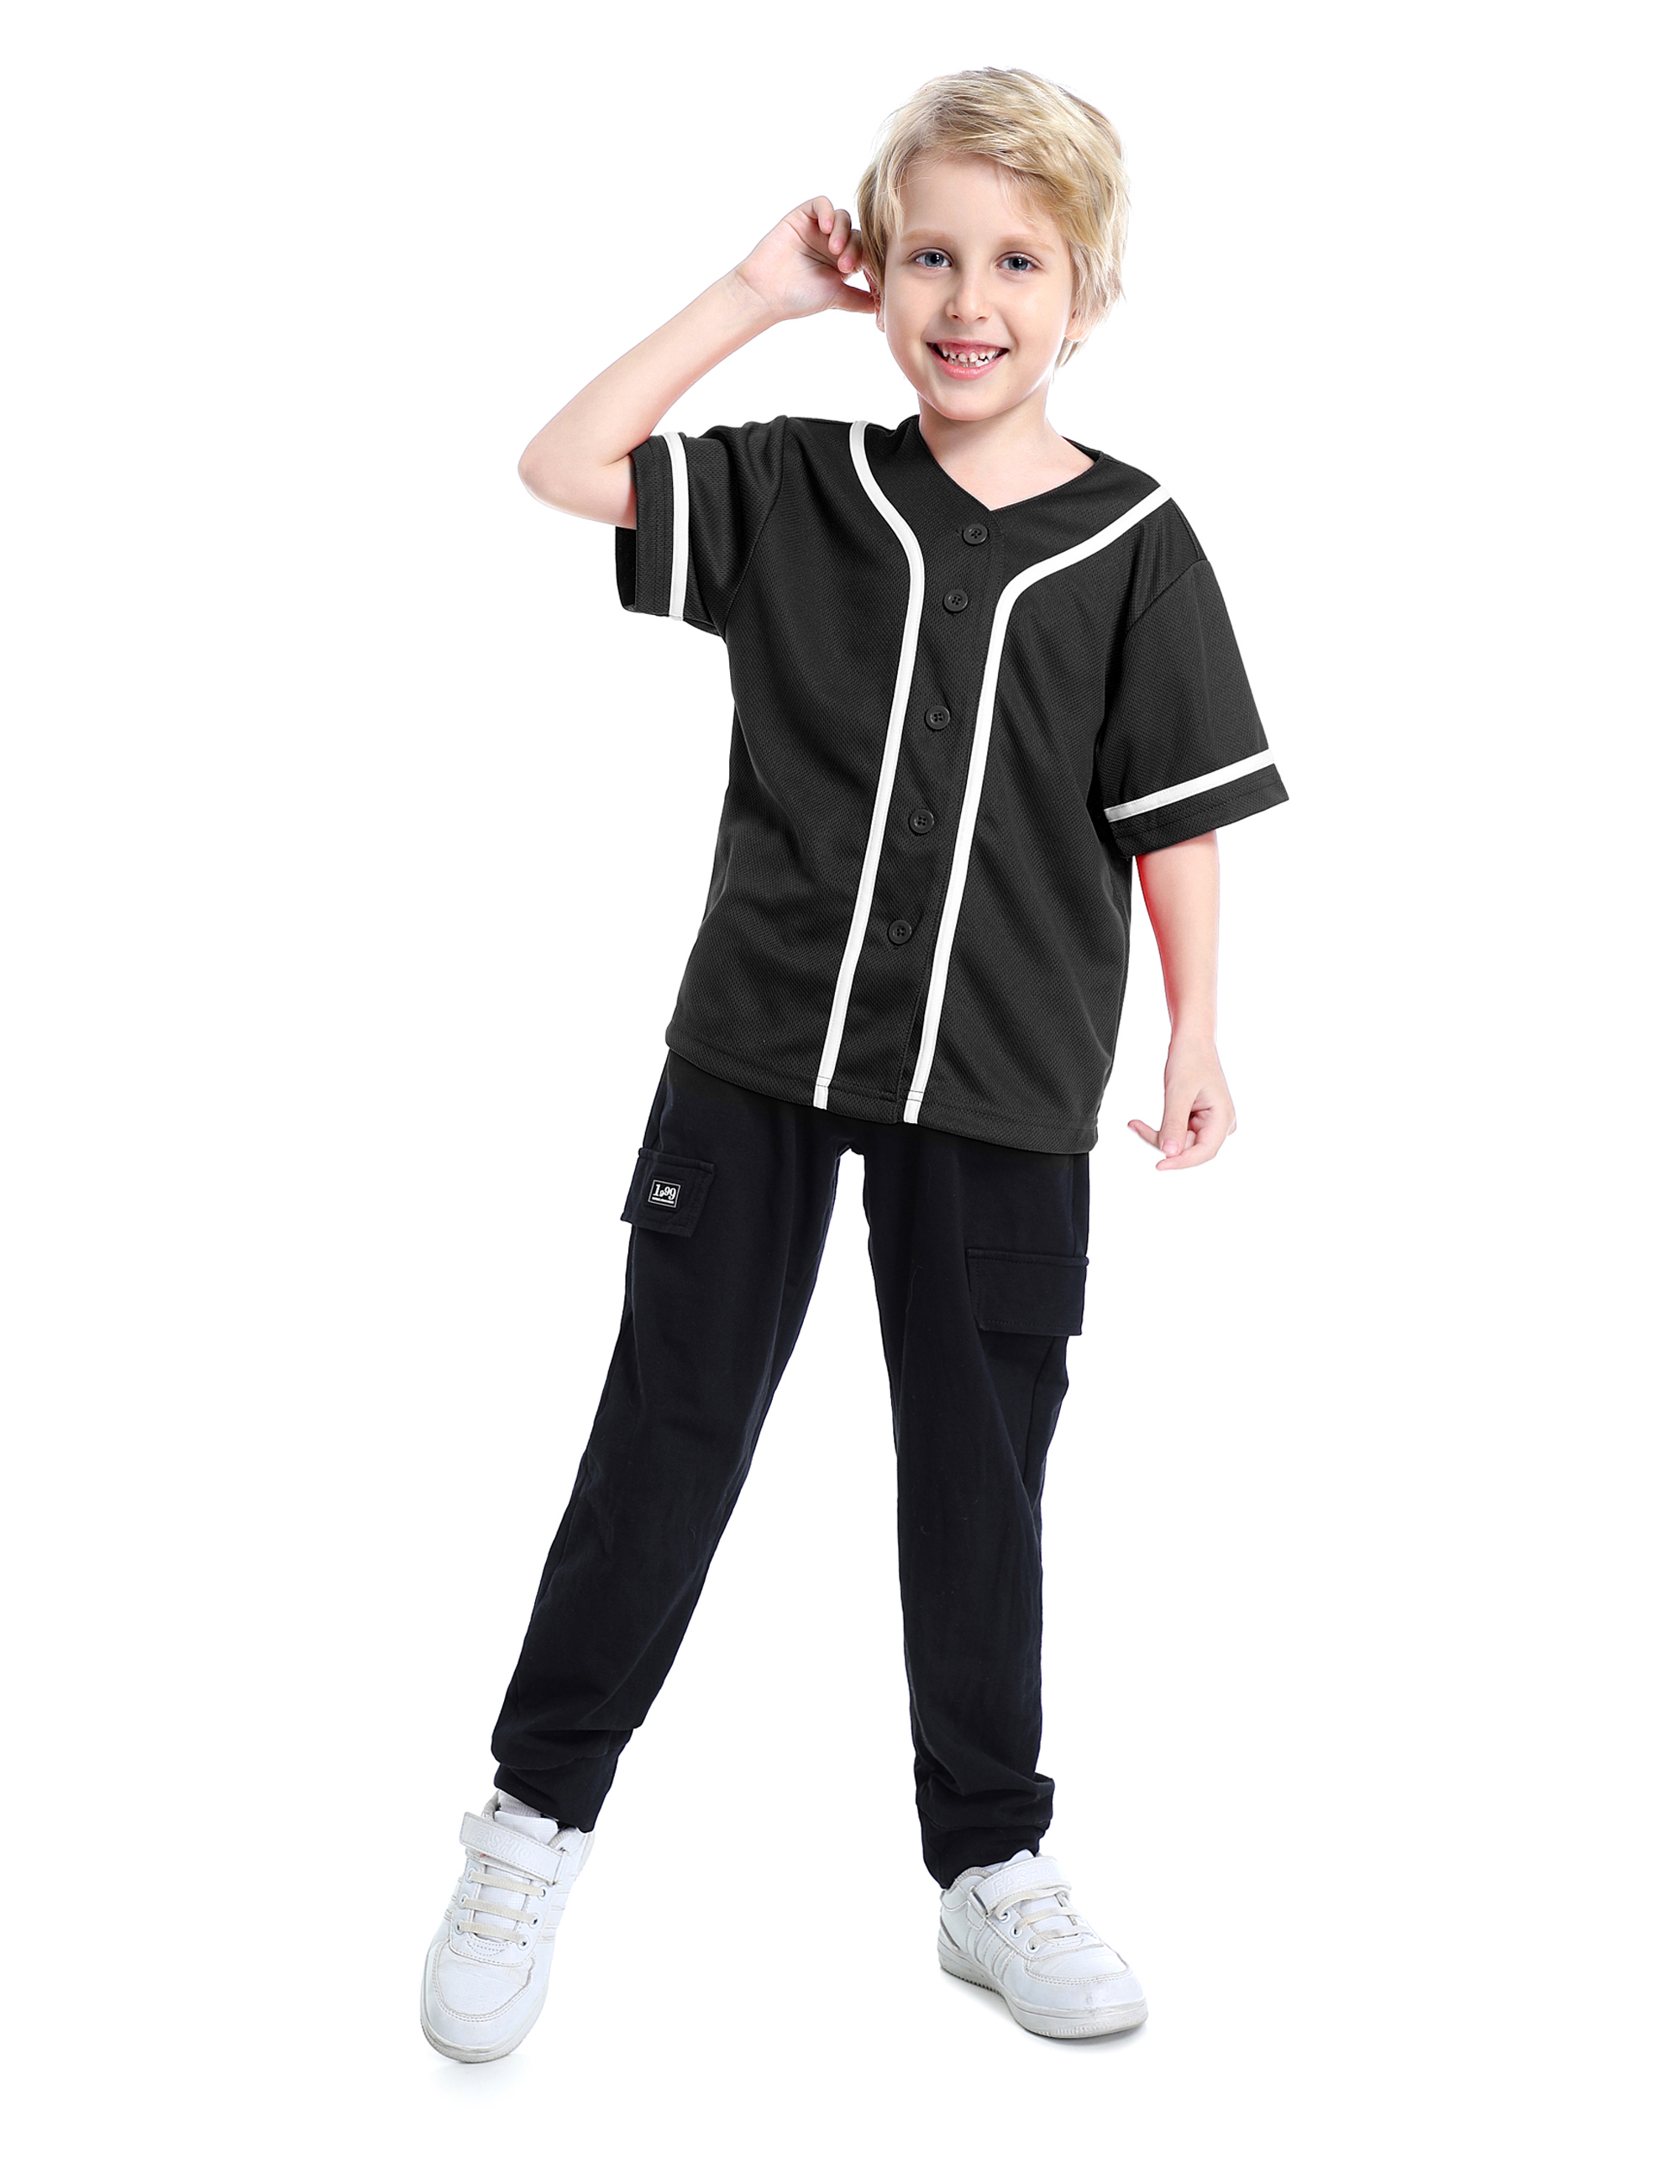 TOPTIE Boys Baseball Jersey, Kids Button Down Jersey T-Shirt Softball Sale,  Reviews. - Opentip